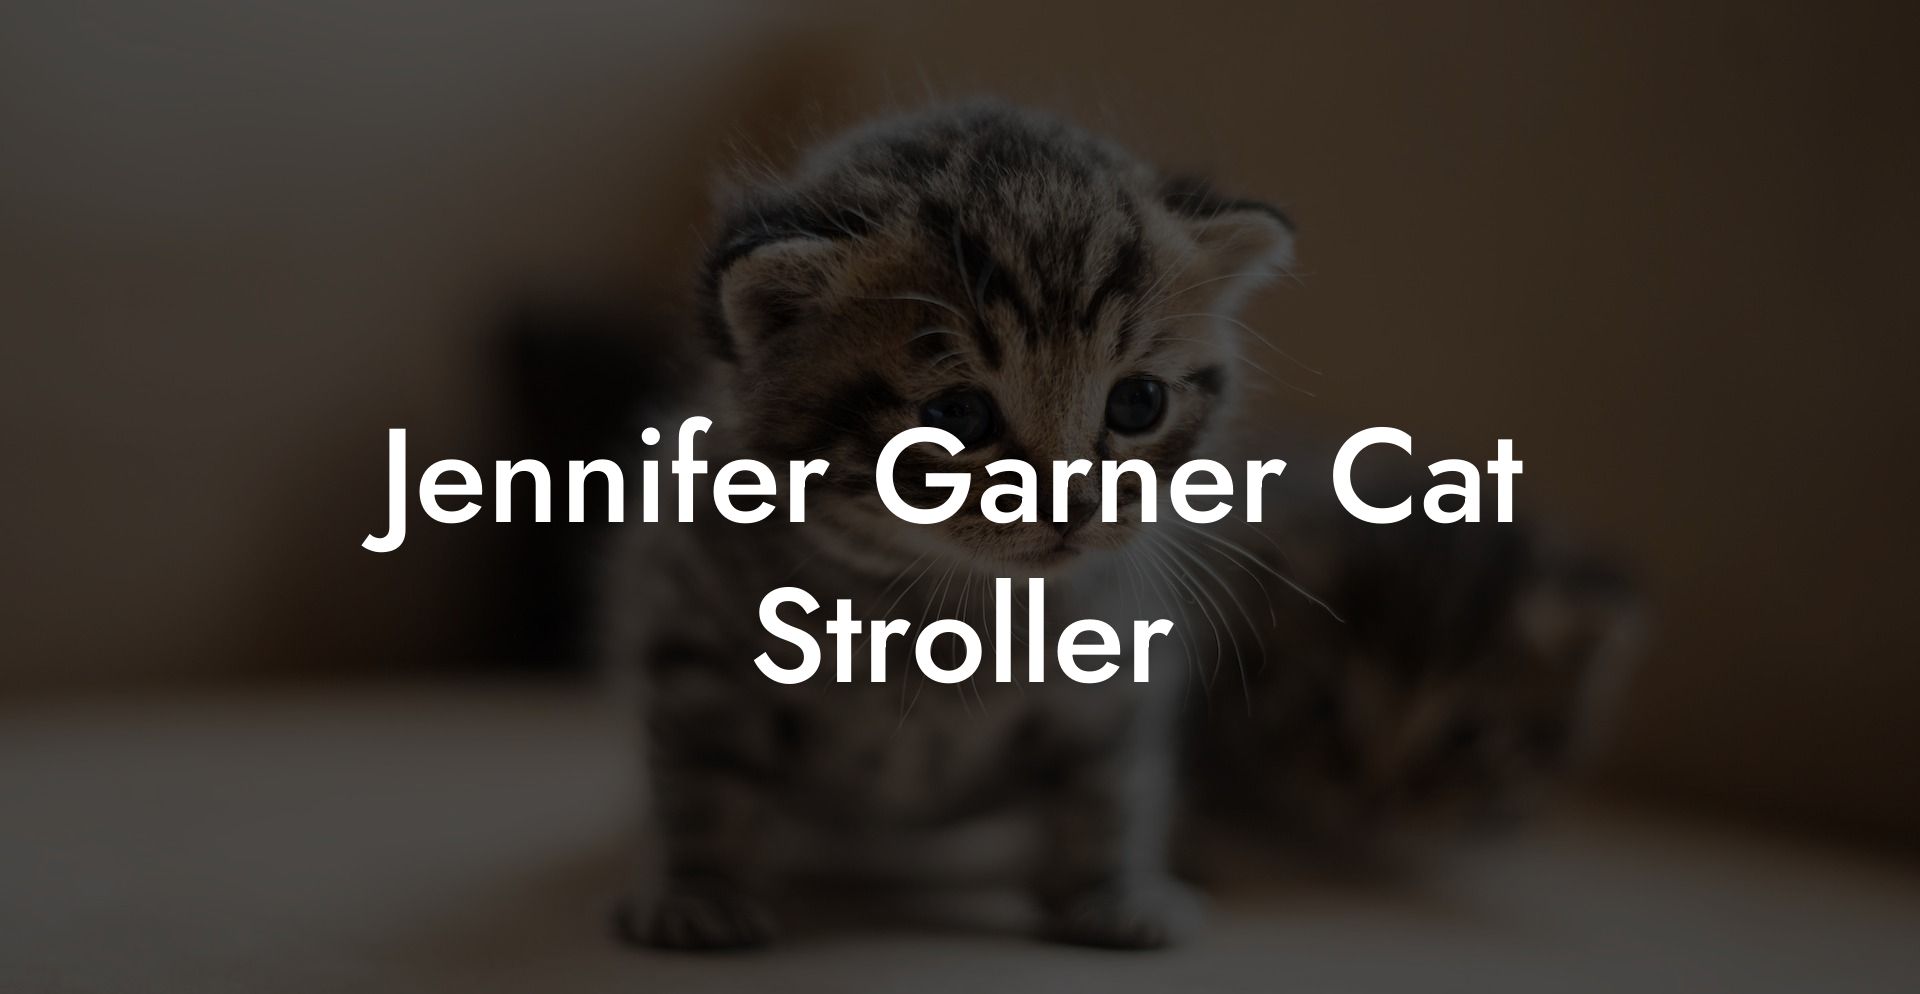 Jennifer Garner Cat Stroller